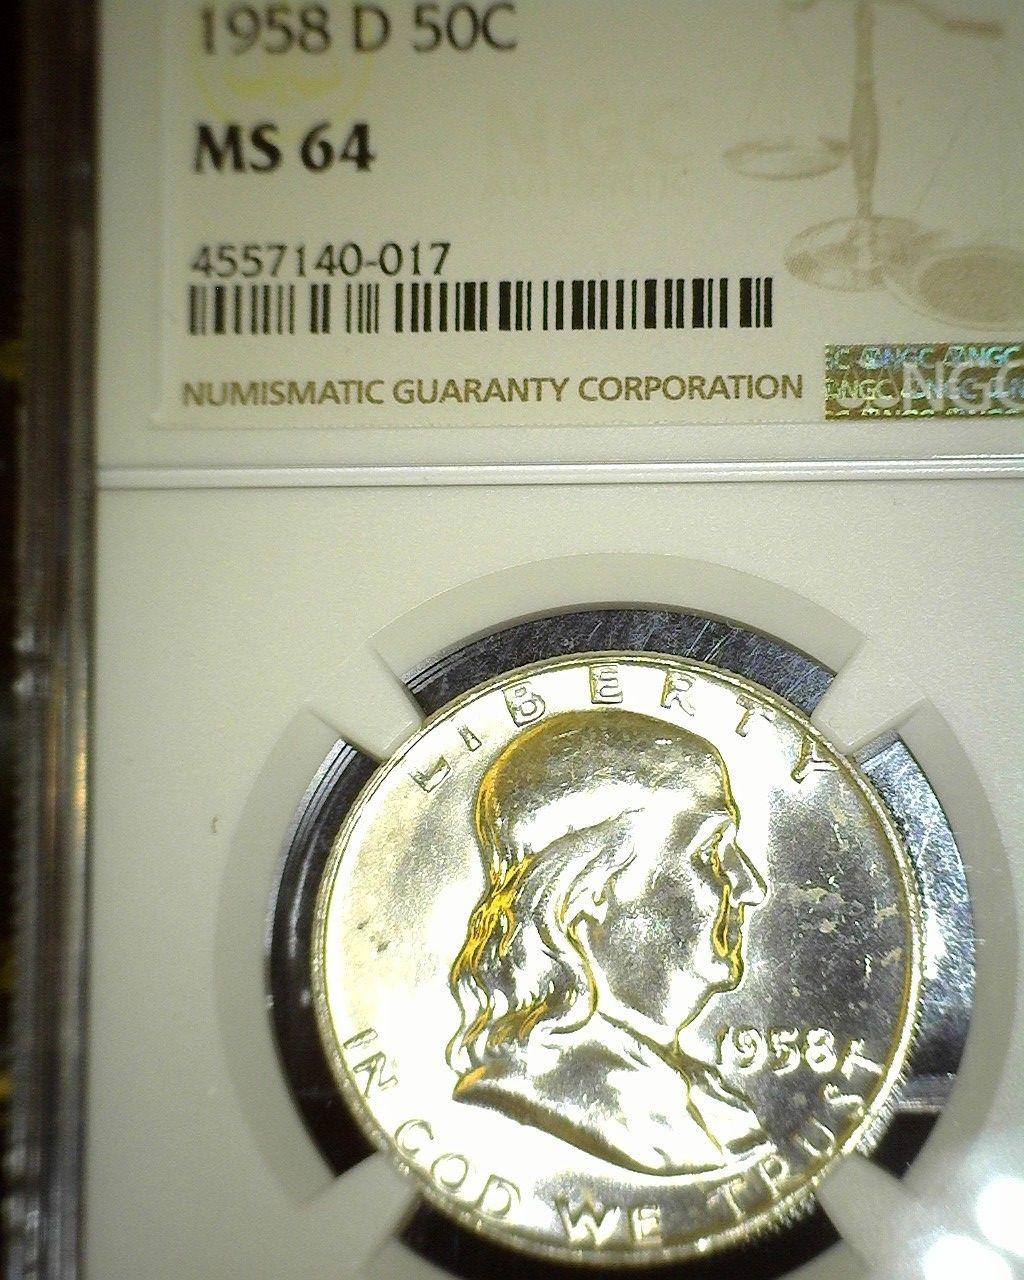 1958 D Franklin Half Dollar NGC slabbed "MS 64".